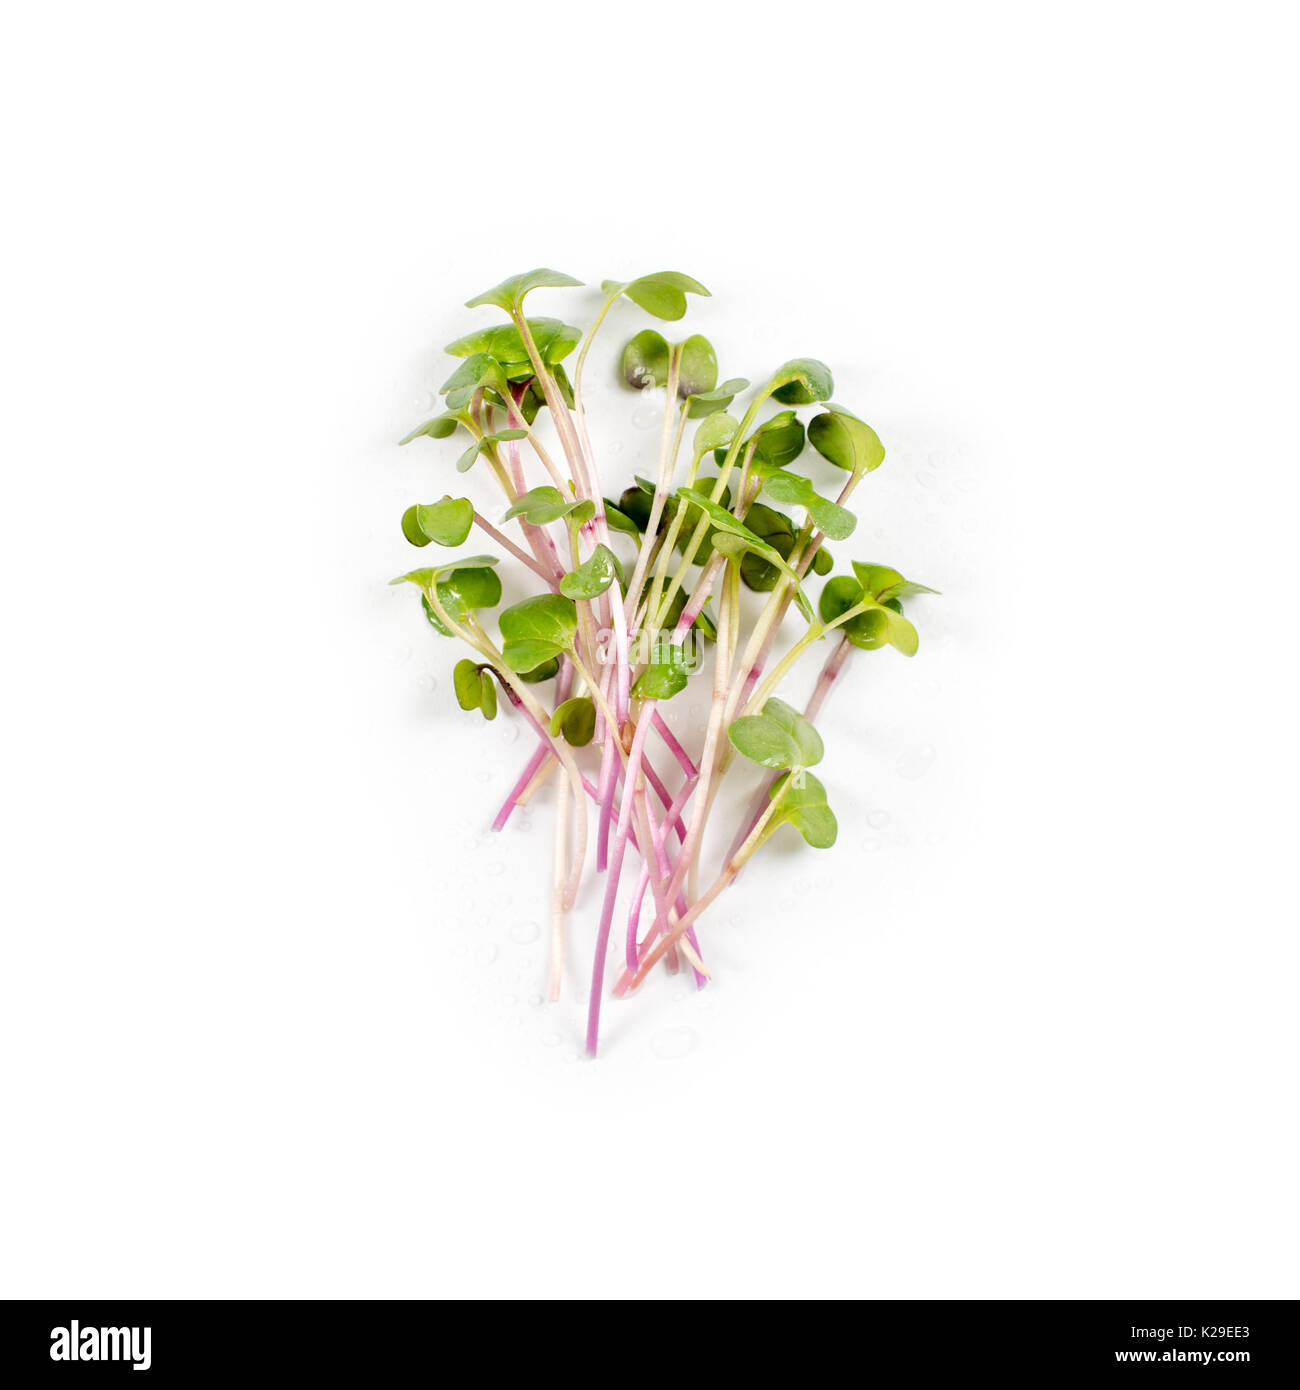 Cumulo di ravanello micro verdi su sfondo bianco. Mangiare sano concetto giardino biologicamente cresciuto come un simbolo di salute e vitamine dalla natura. Microgreens closeup Foto - Alamy